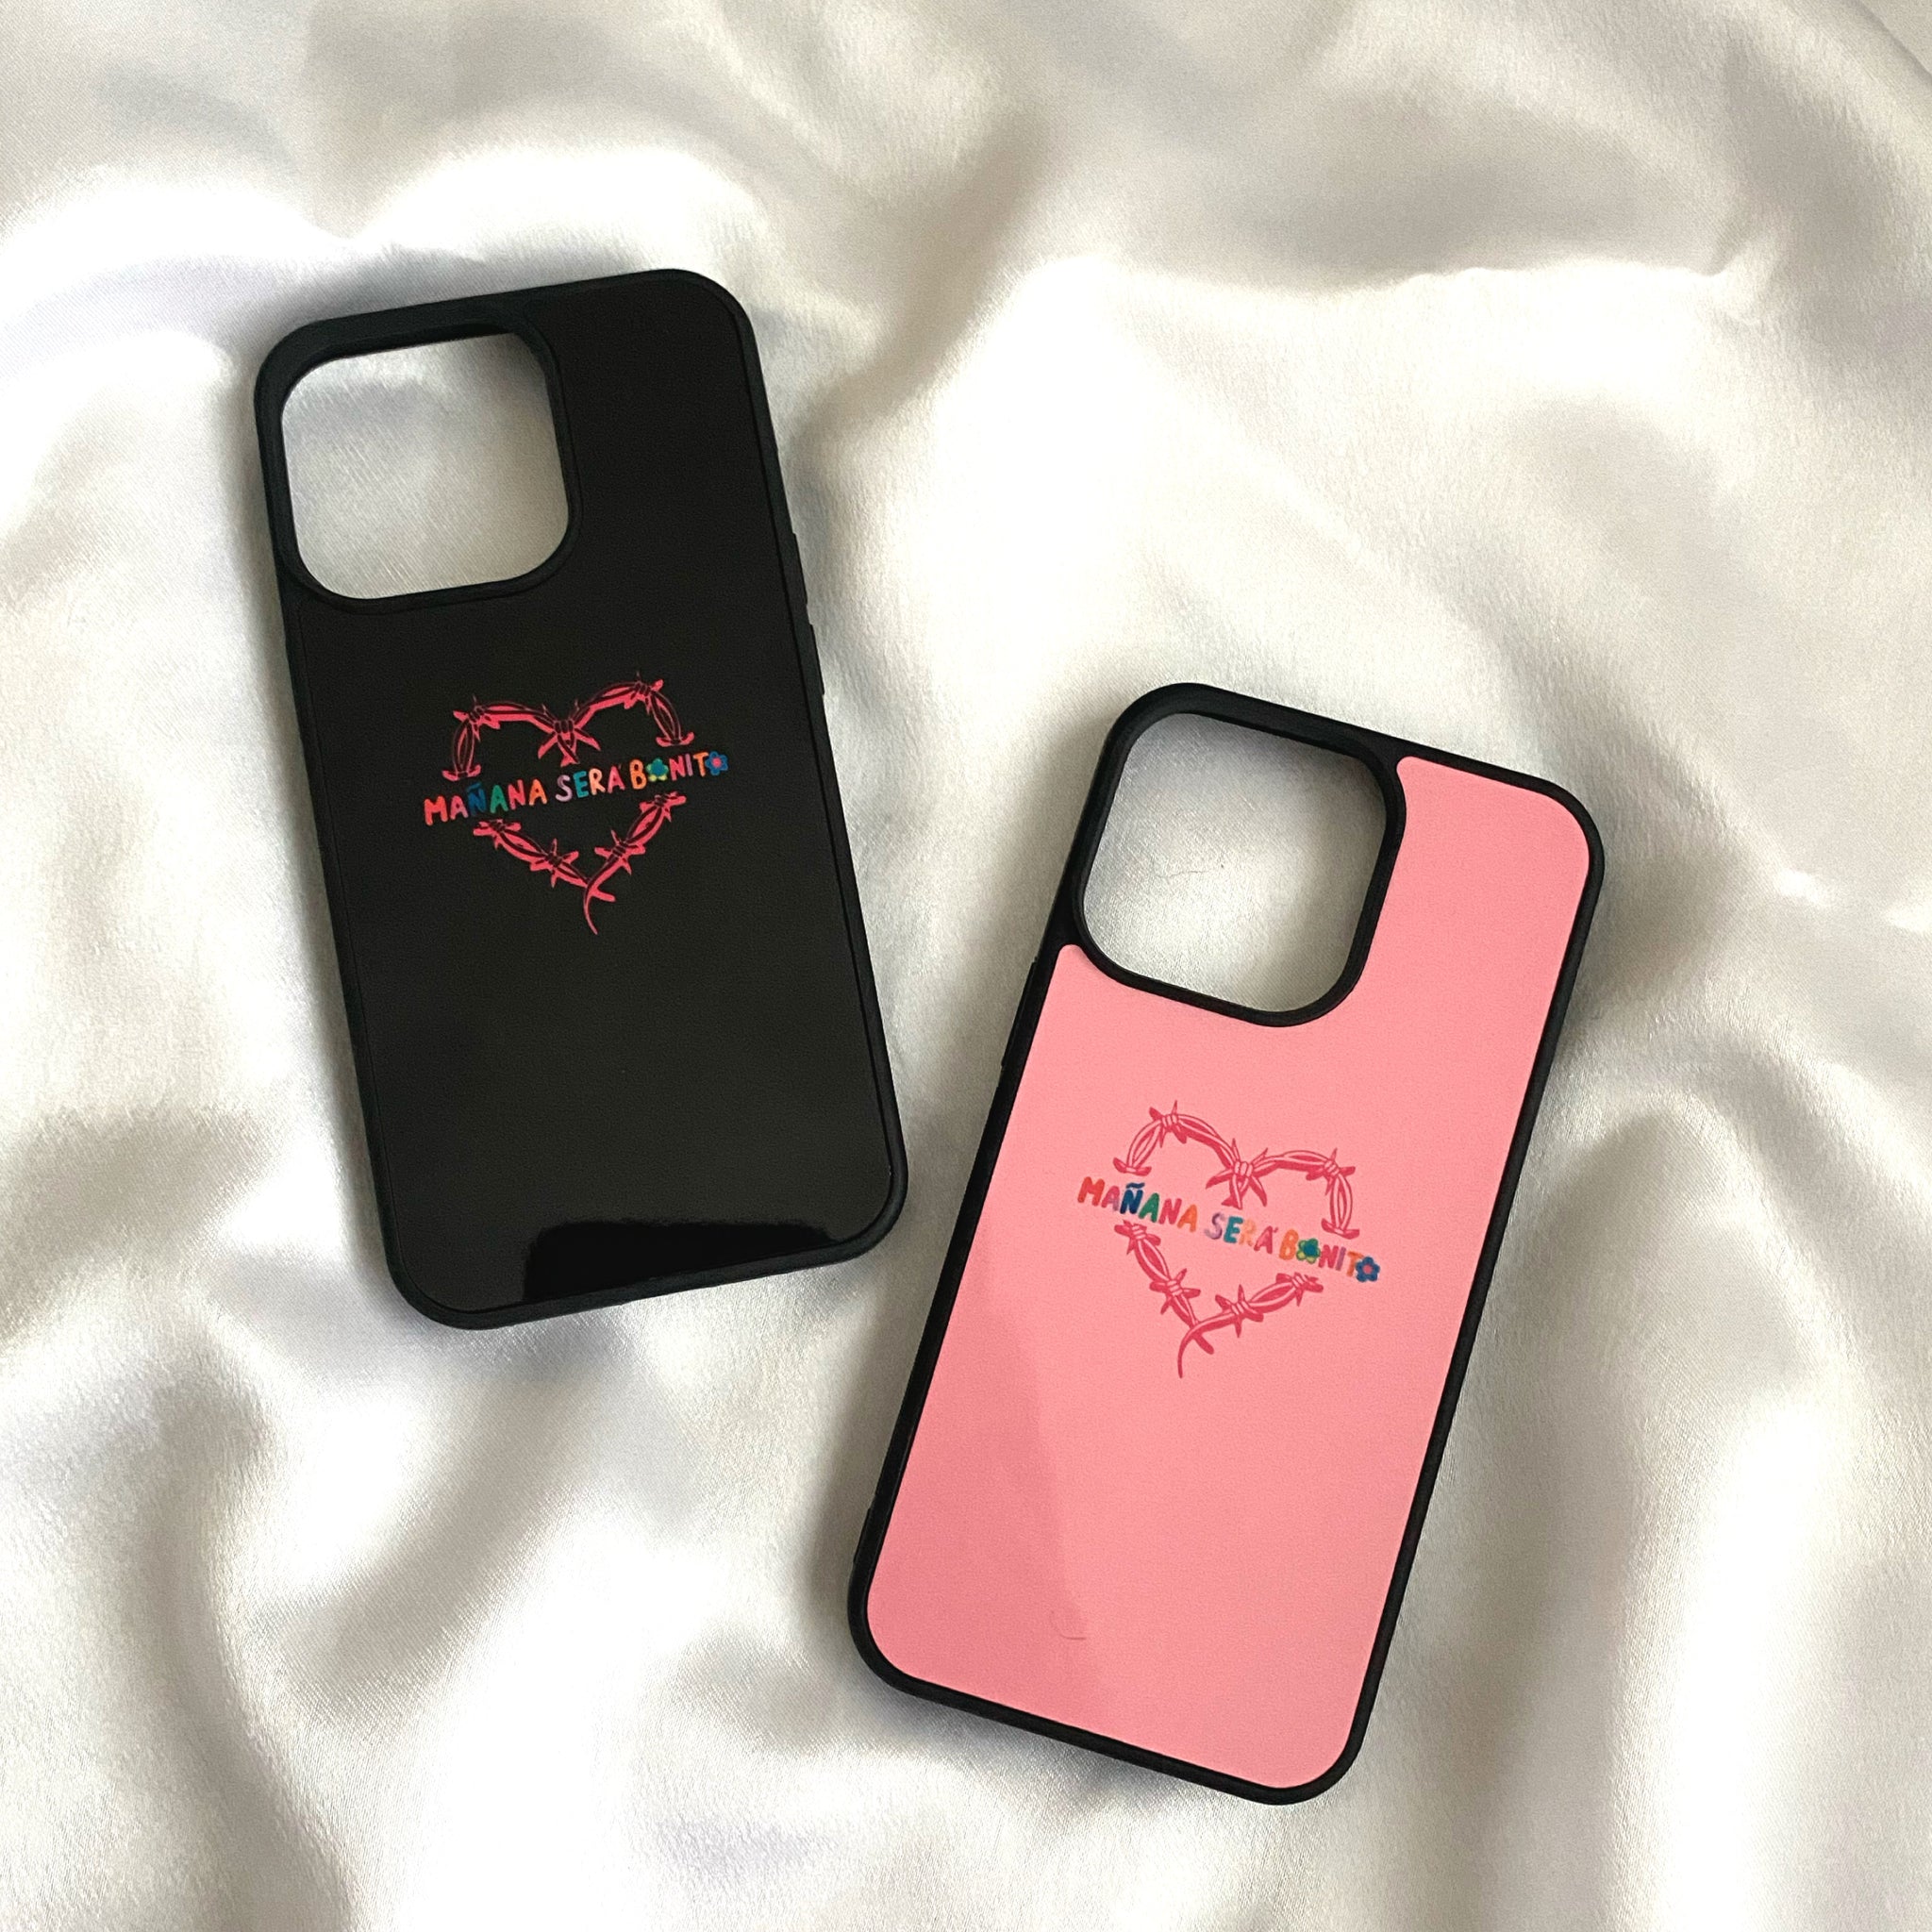 Mañana Sera Bonito Heart iPhone Case